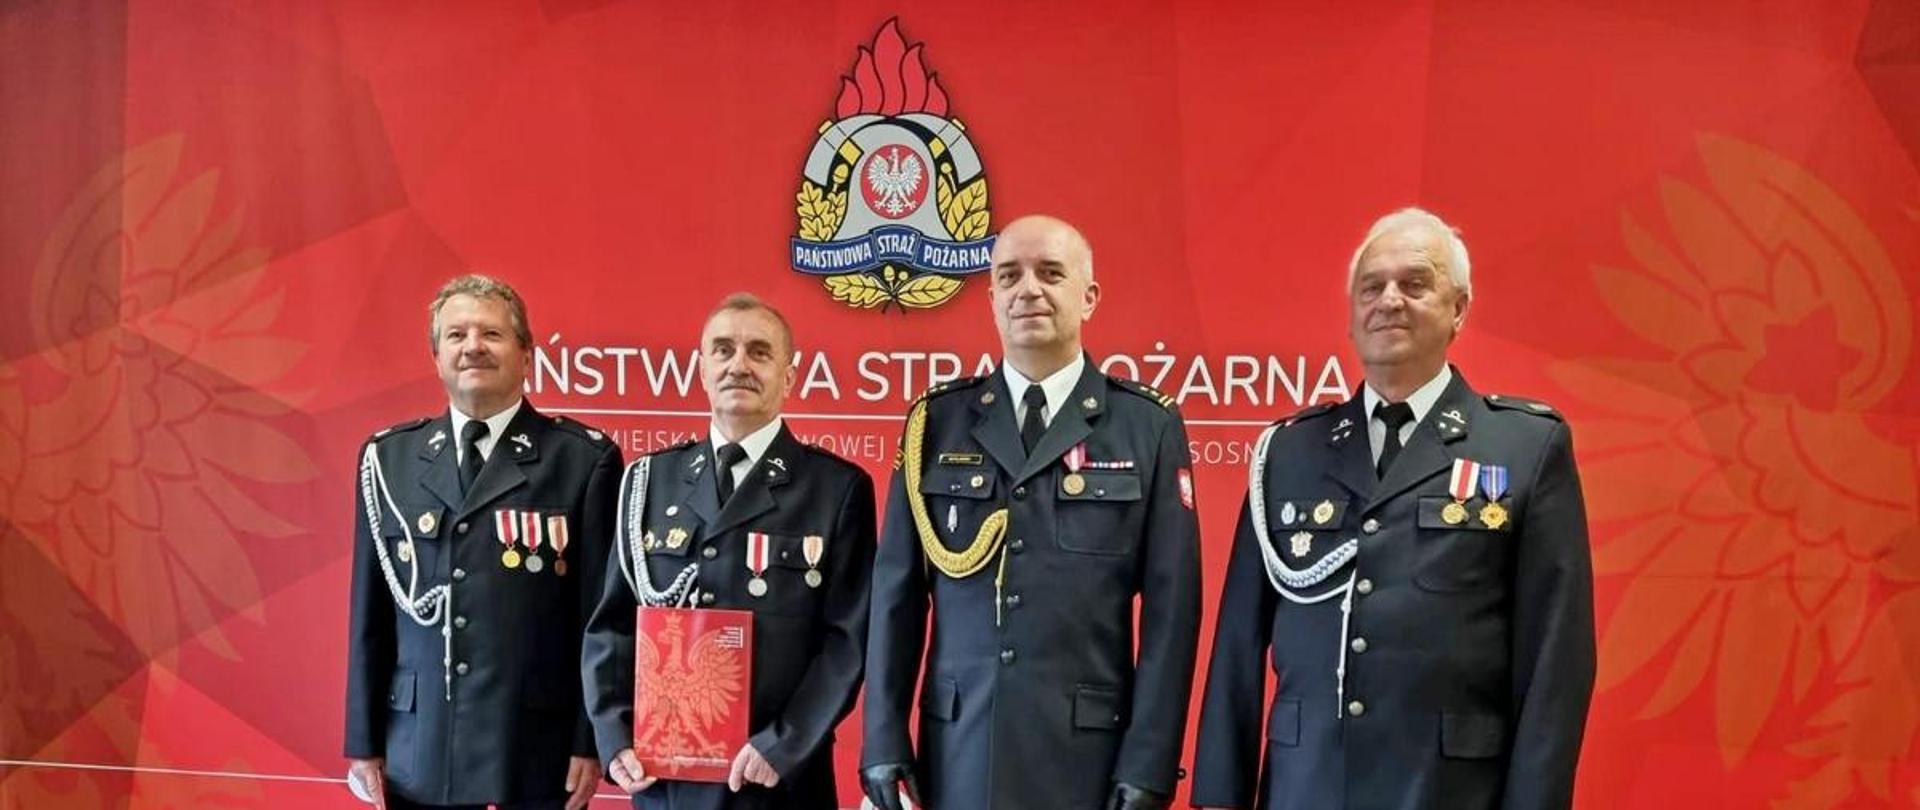 Na zdjęciu Komendant Miejski Państwowej Straży Pożarnej w Sosnowcu w umundurowaniu galowym oraz strażacy OSP w umundurowaniu galowym. W tle widoczne logo Państwowej Straży Pożarnej na czerwonym tle.